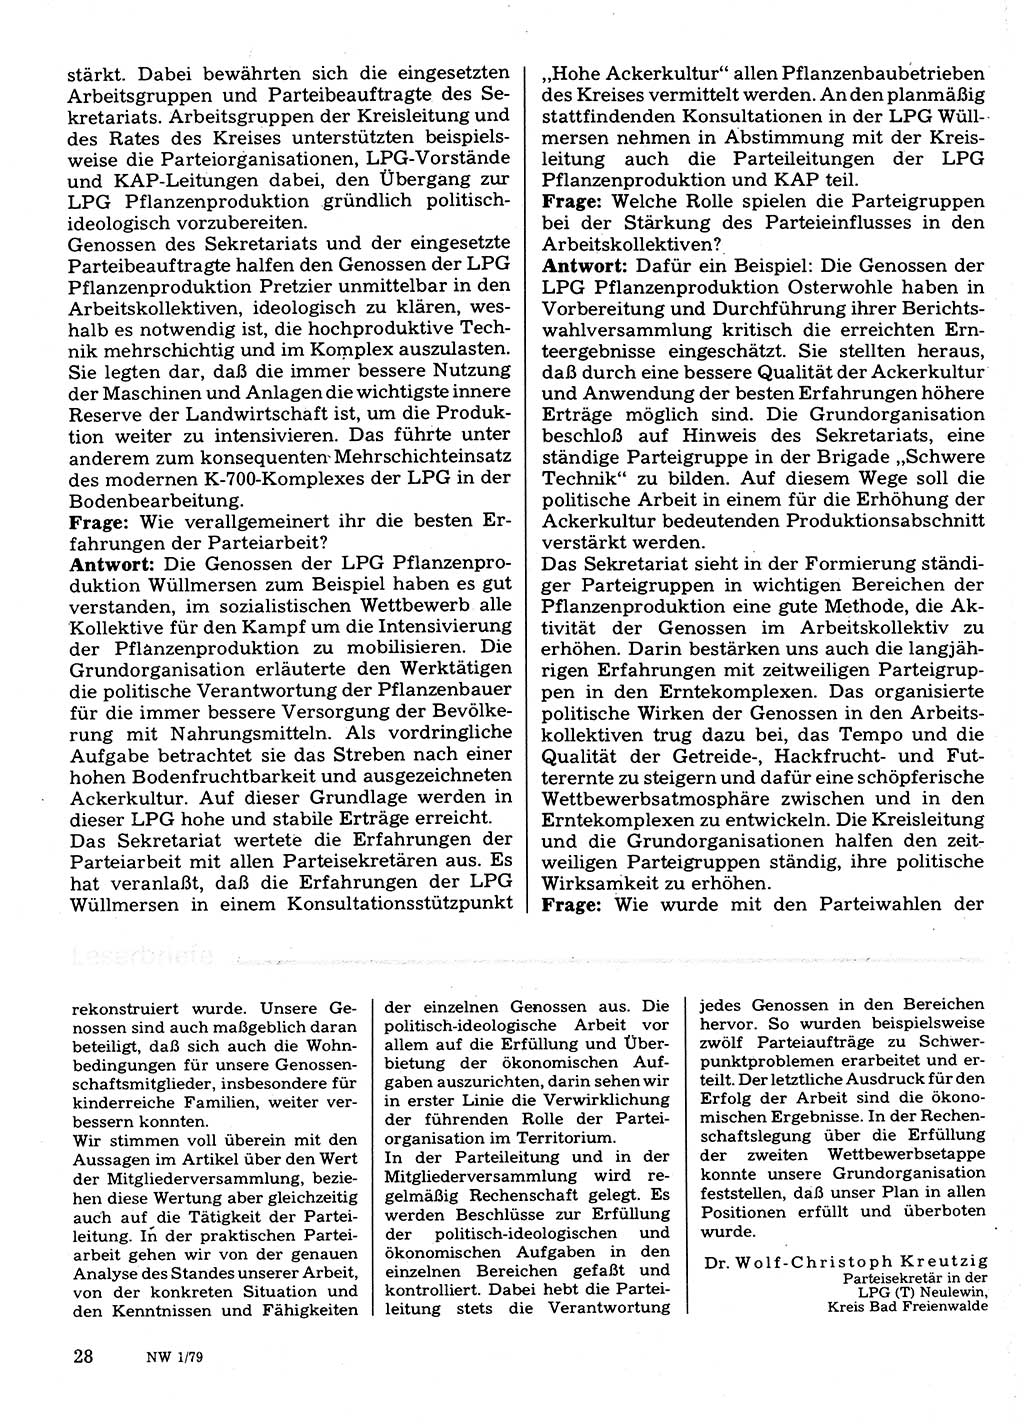 Neuer Weg (NW), Organ des Zentralkomitees (ZK) der SED (Sozialistische Einheitspartei Deutschlands) für Fragen des Parteilebens, 34. Jahrgang [Deutsche Demokratische Republik (DDR)] 1979, Seite 28 (NW ZK SED DDR 1979, S. 28)